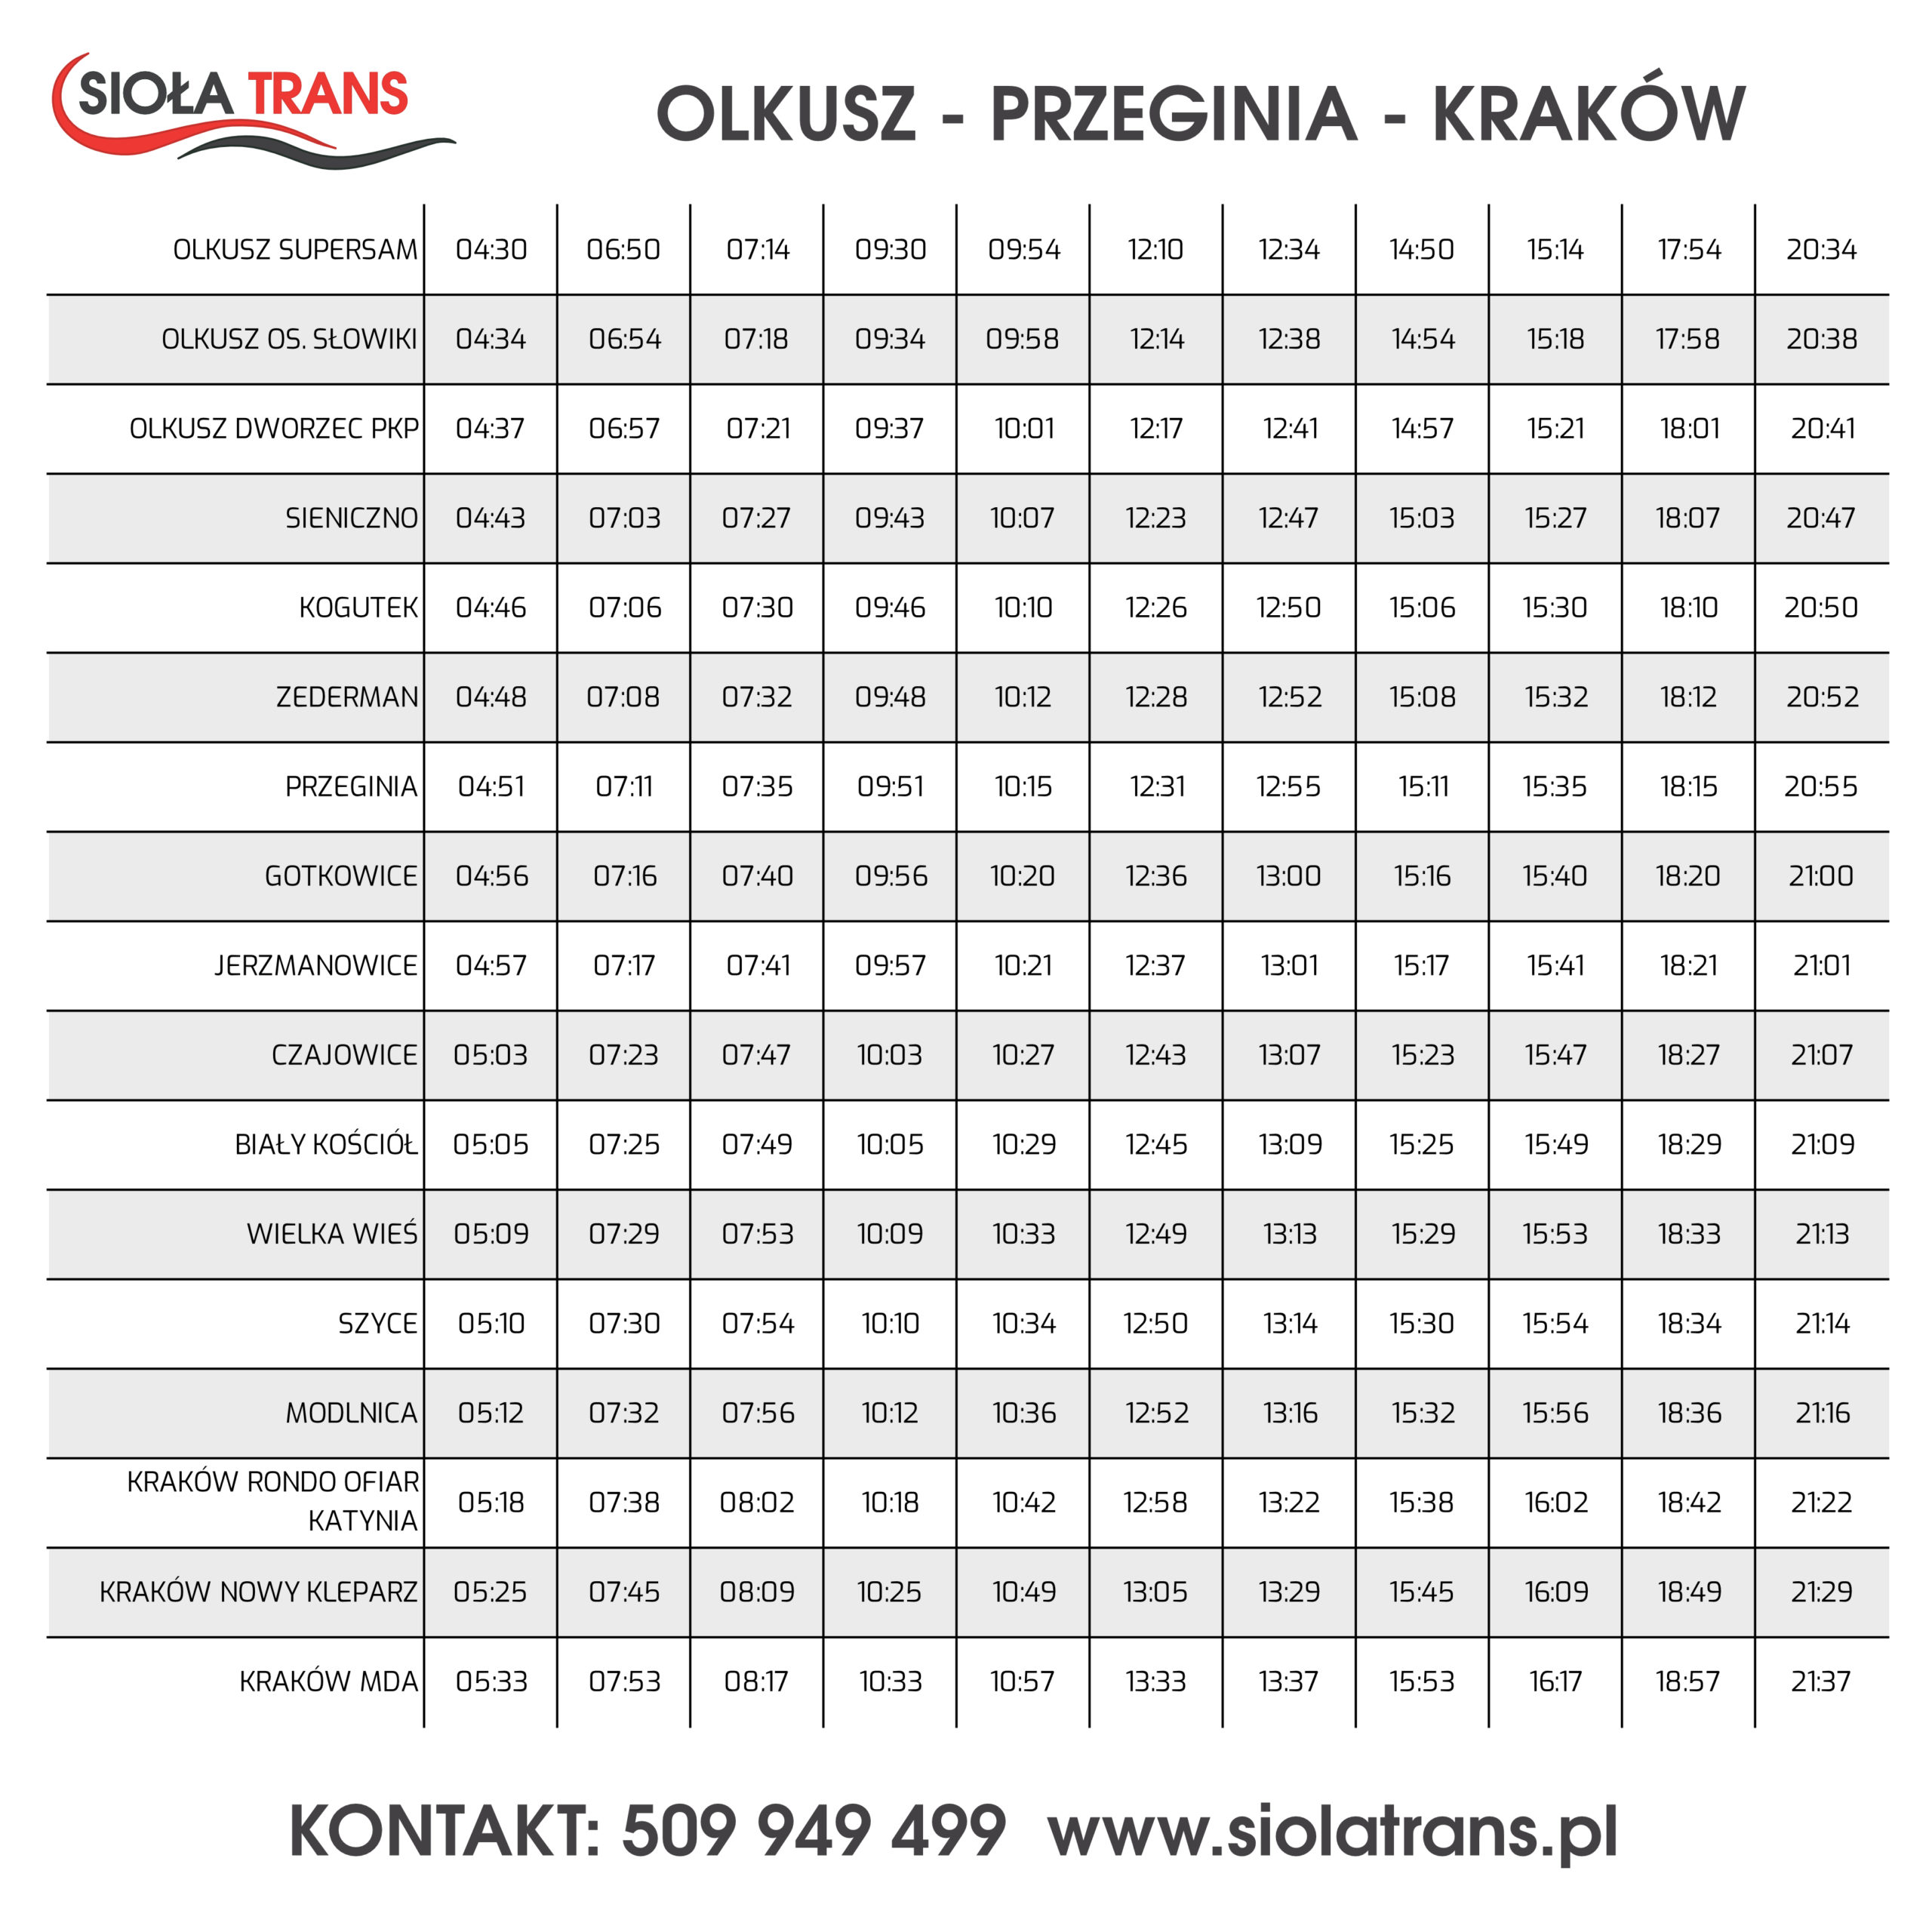 siola_trans_olkusz_krakow